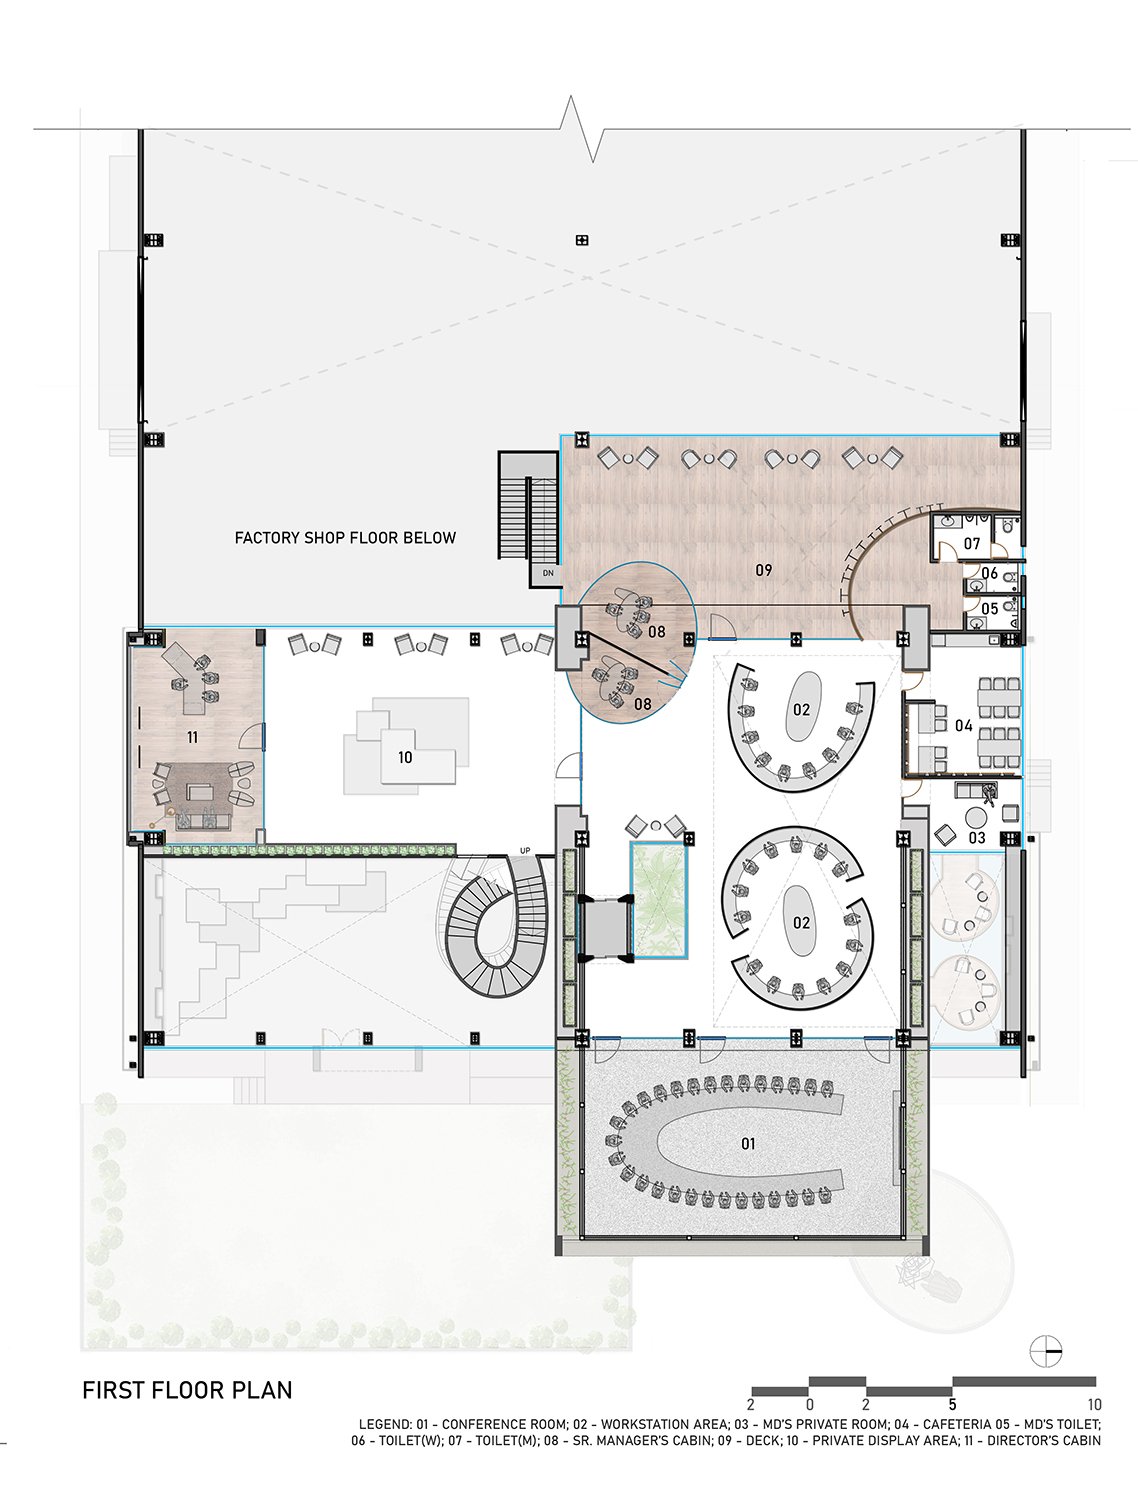 First Floor Plan | SANJAY PURI ARCHITECTS